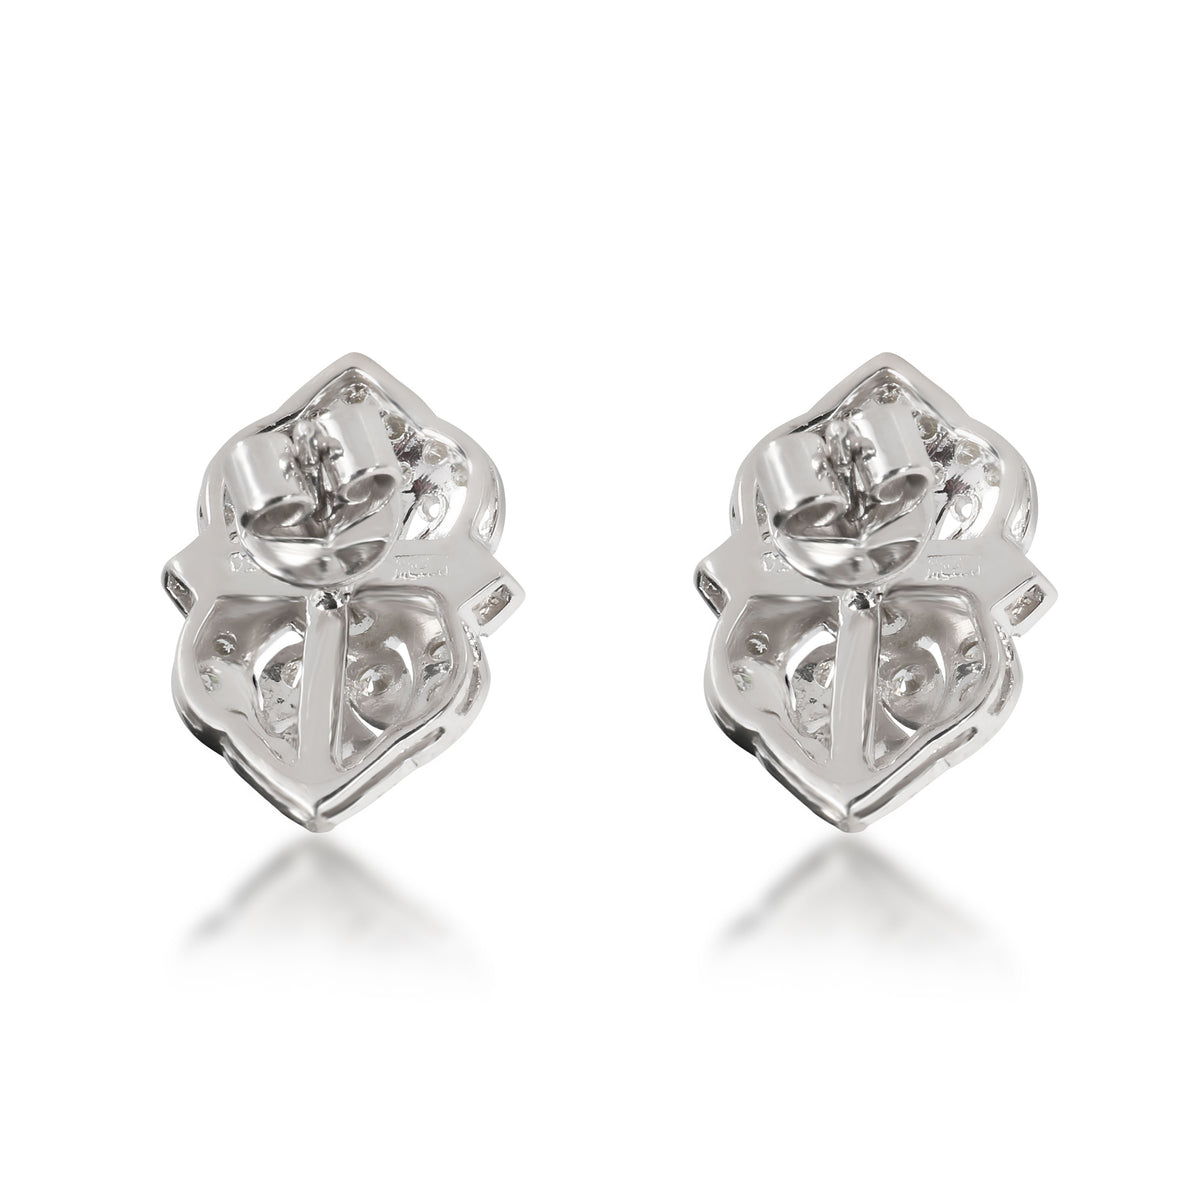 Vintage Inspired Diamond Earrings in 18K White Gold 1.32 CTW